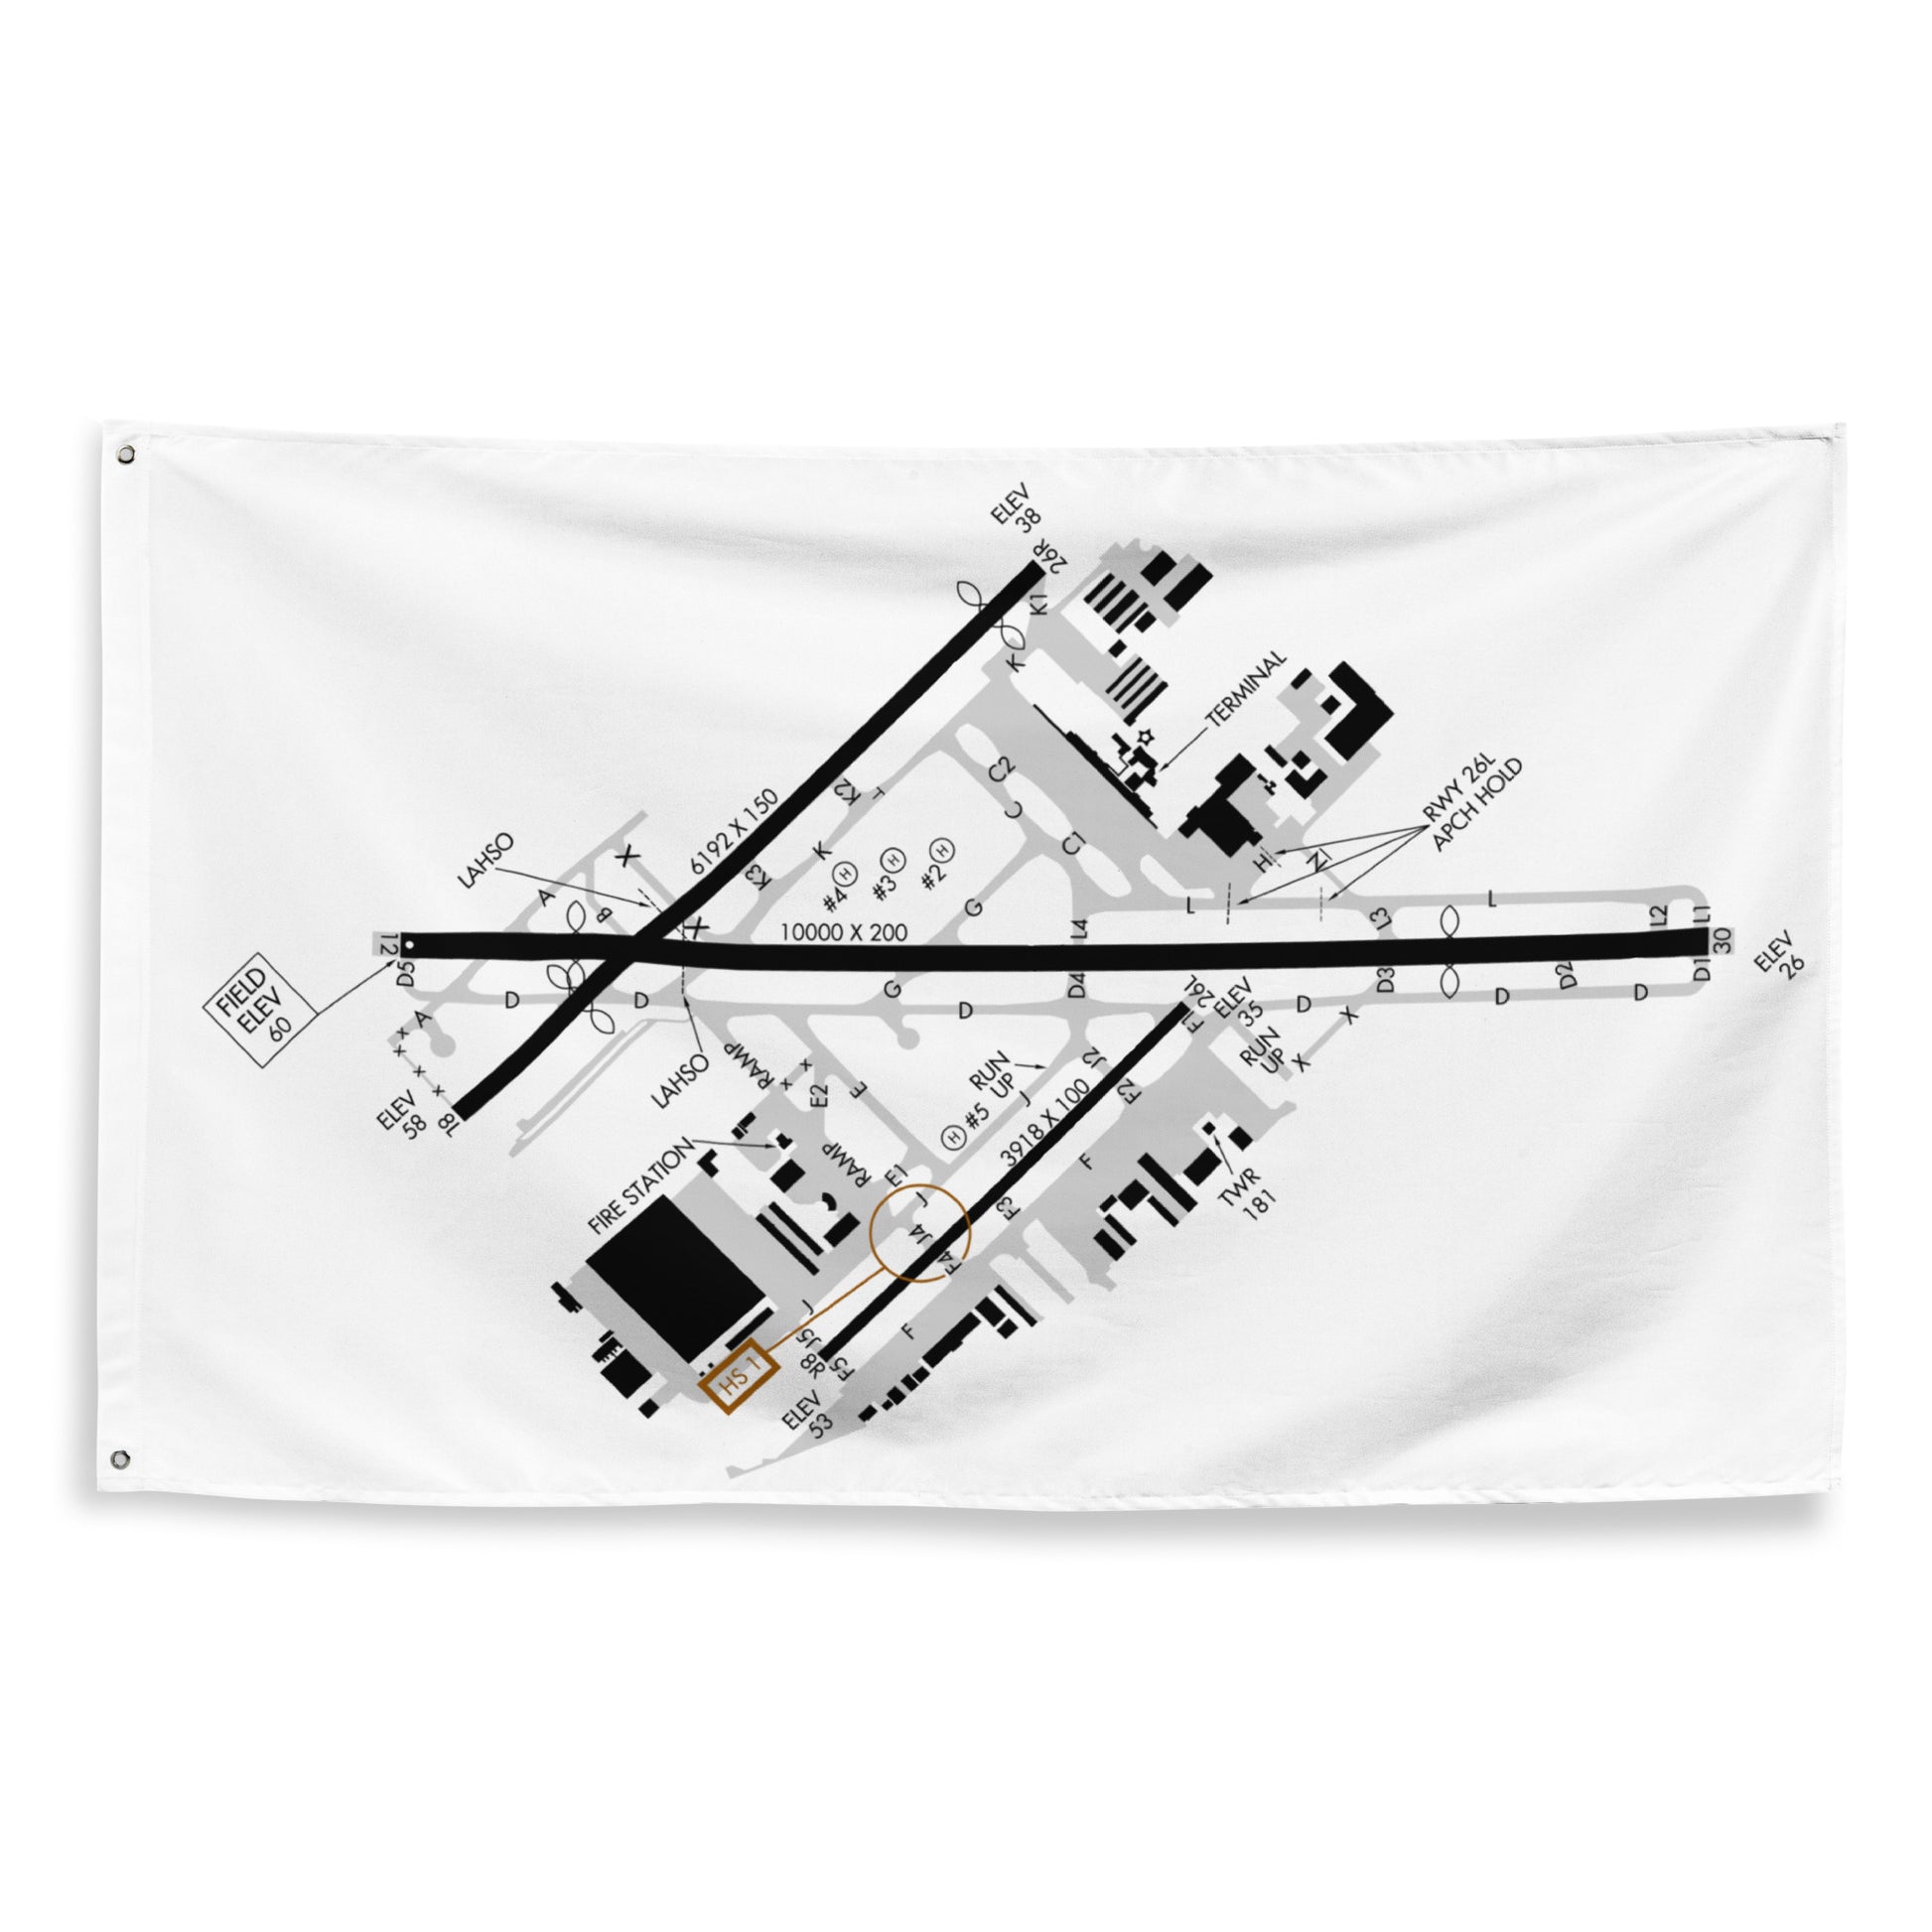 Long Beach Airport taxi diagram - flag